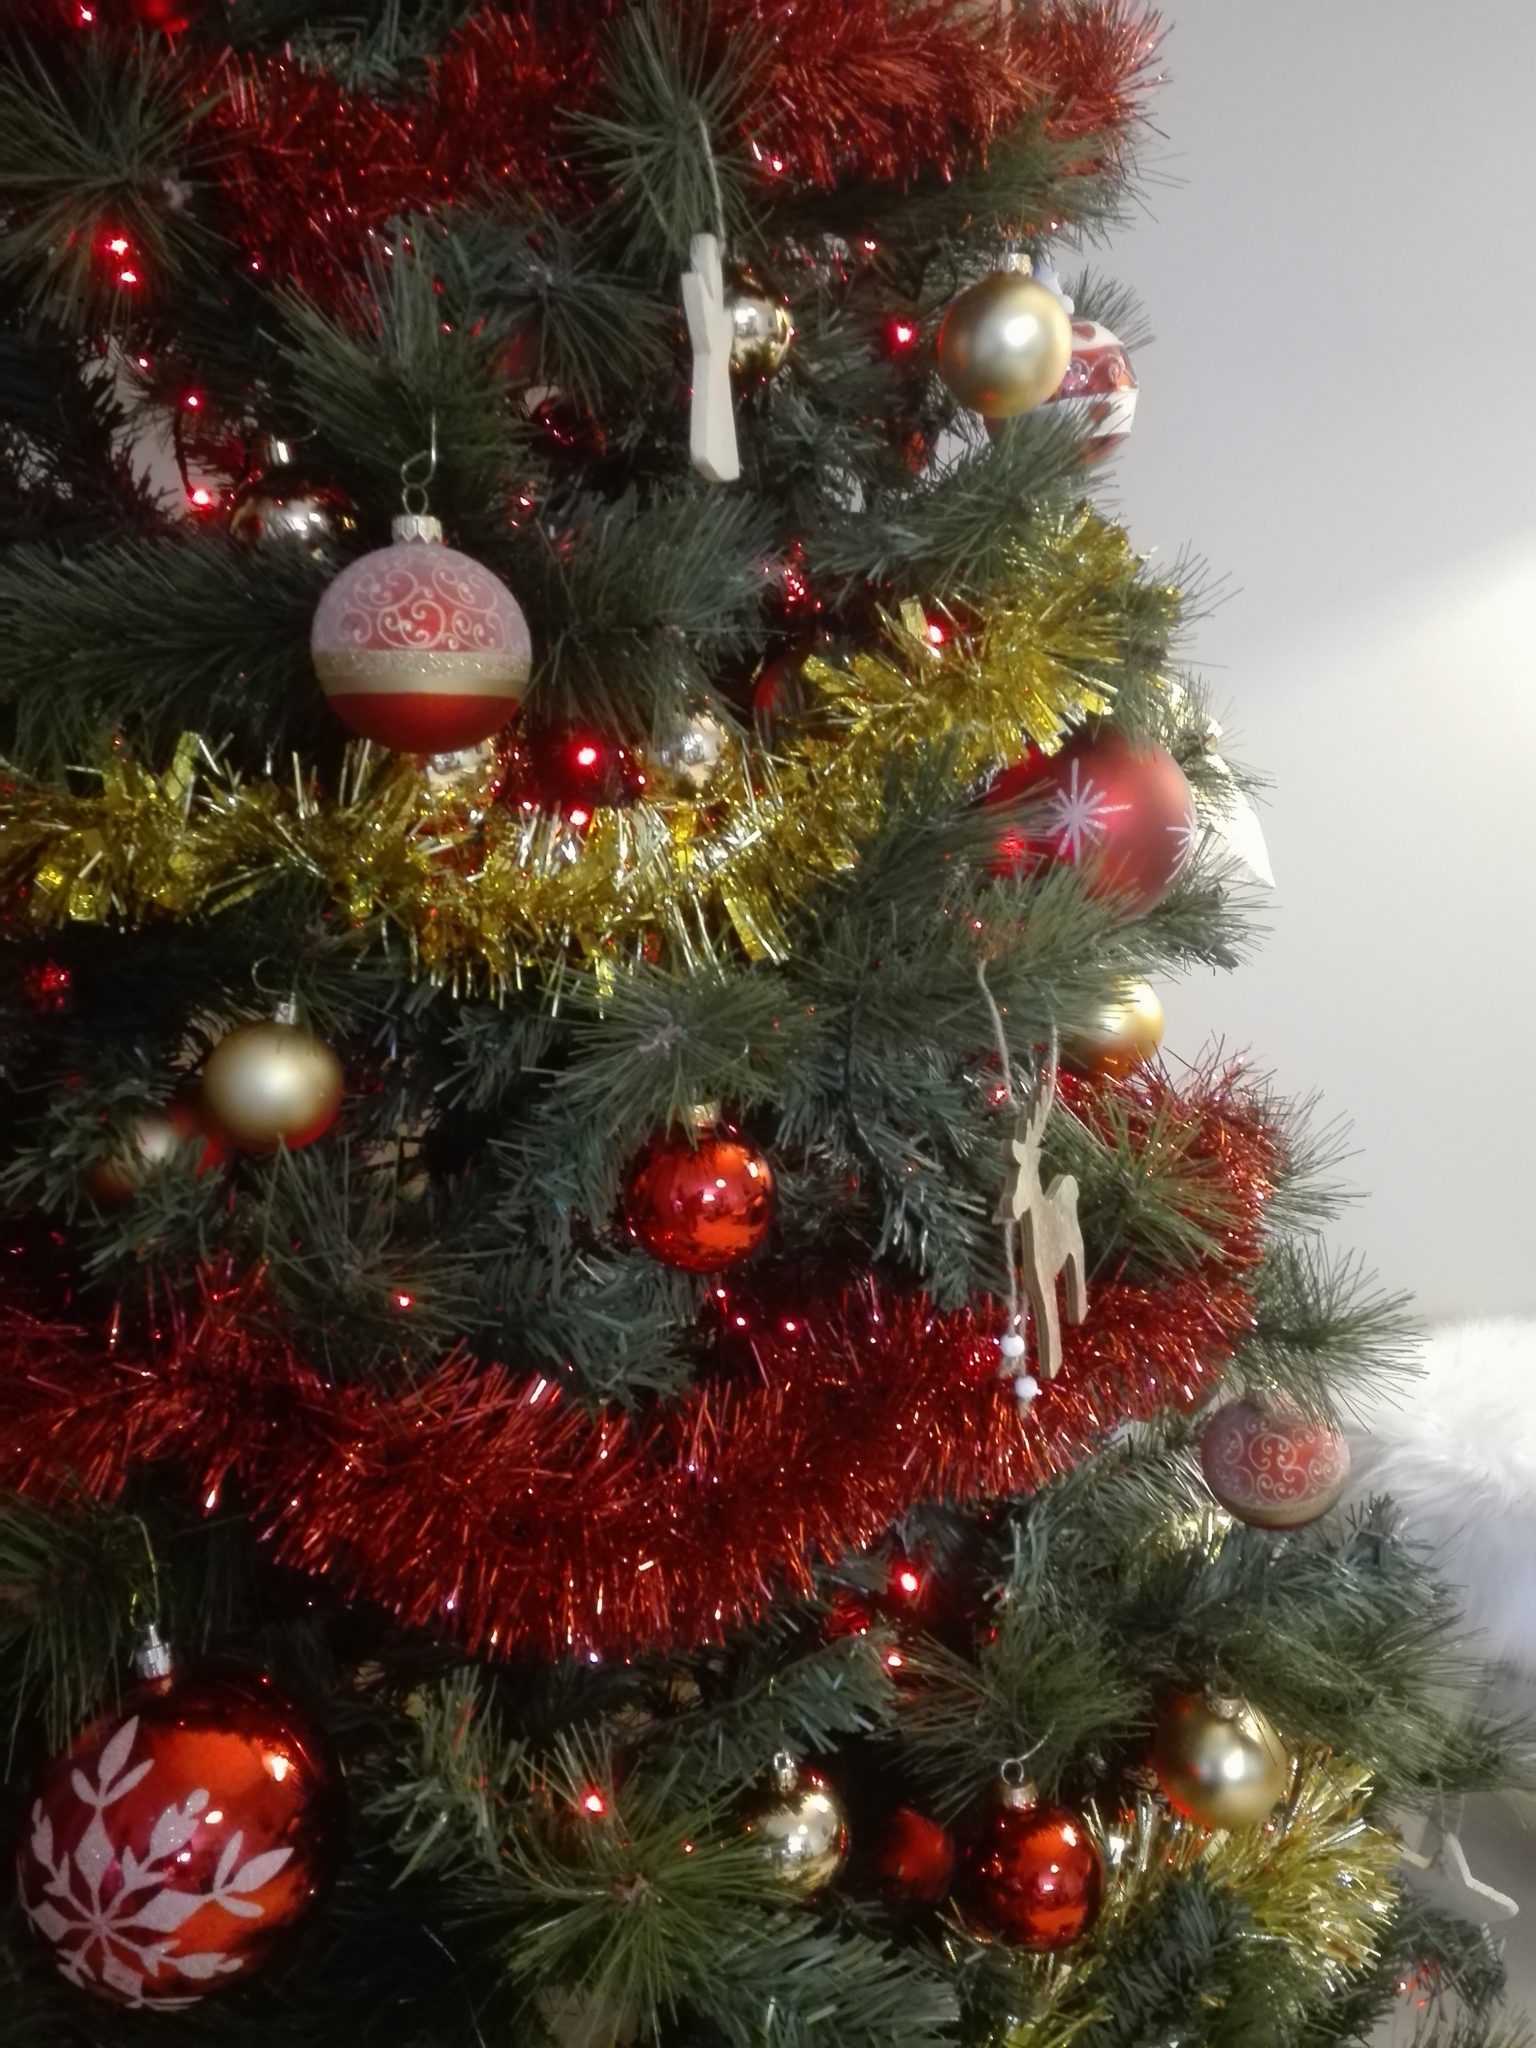 Comment disposer les guirlandes lumineuses sur le sapin de Noël -   Blog